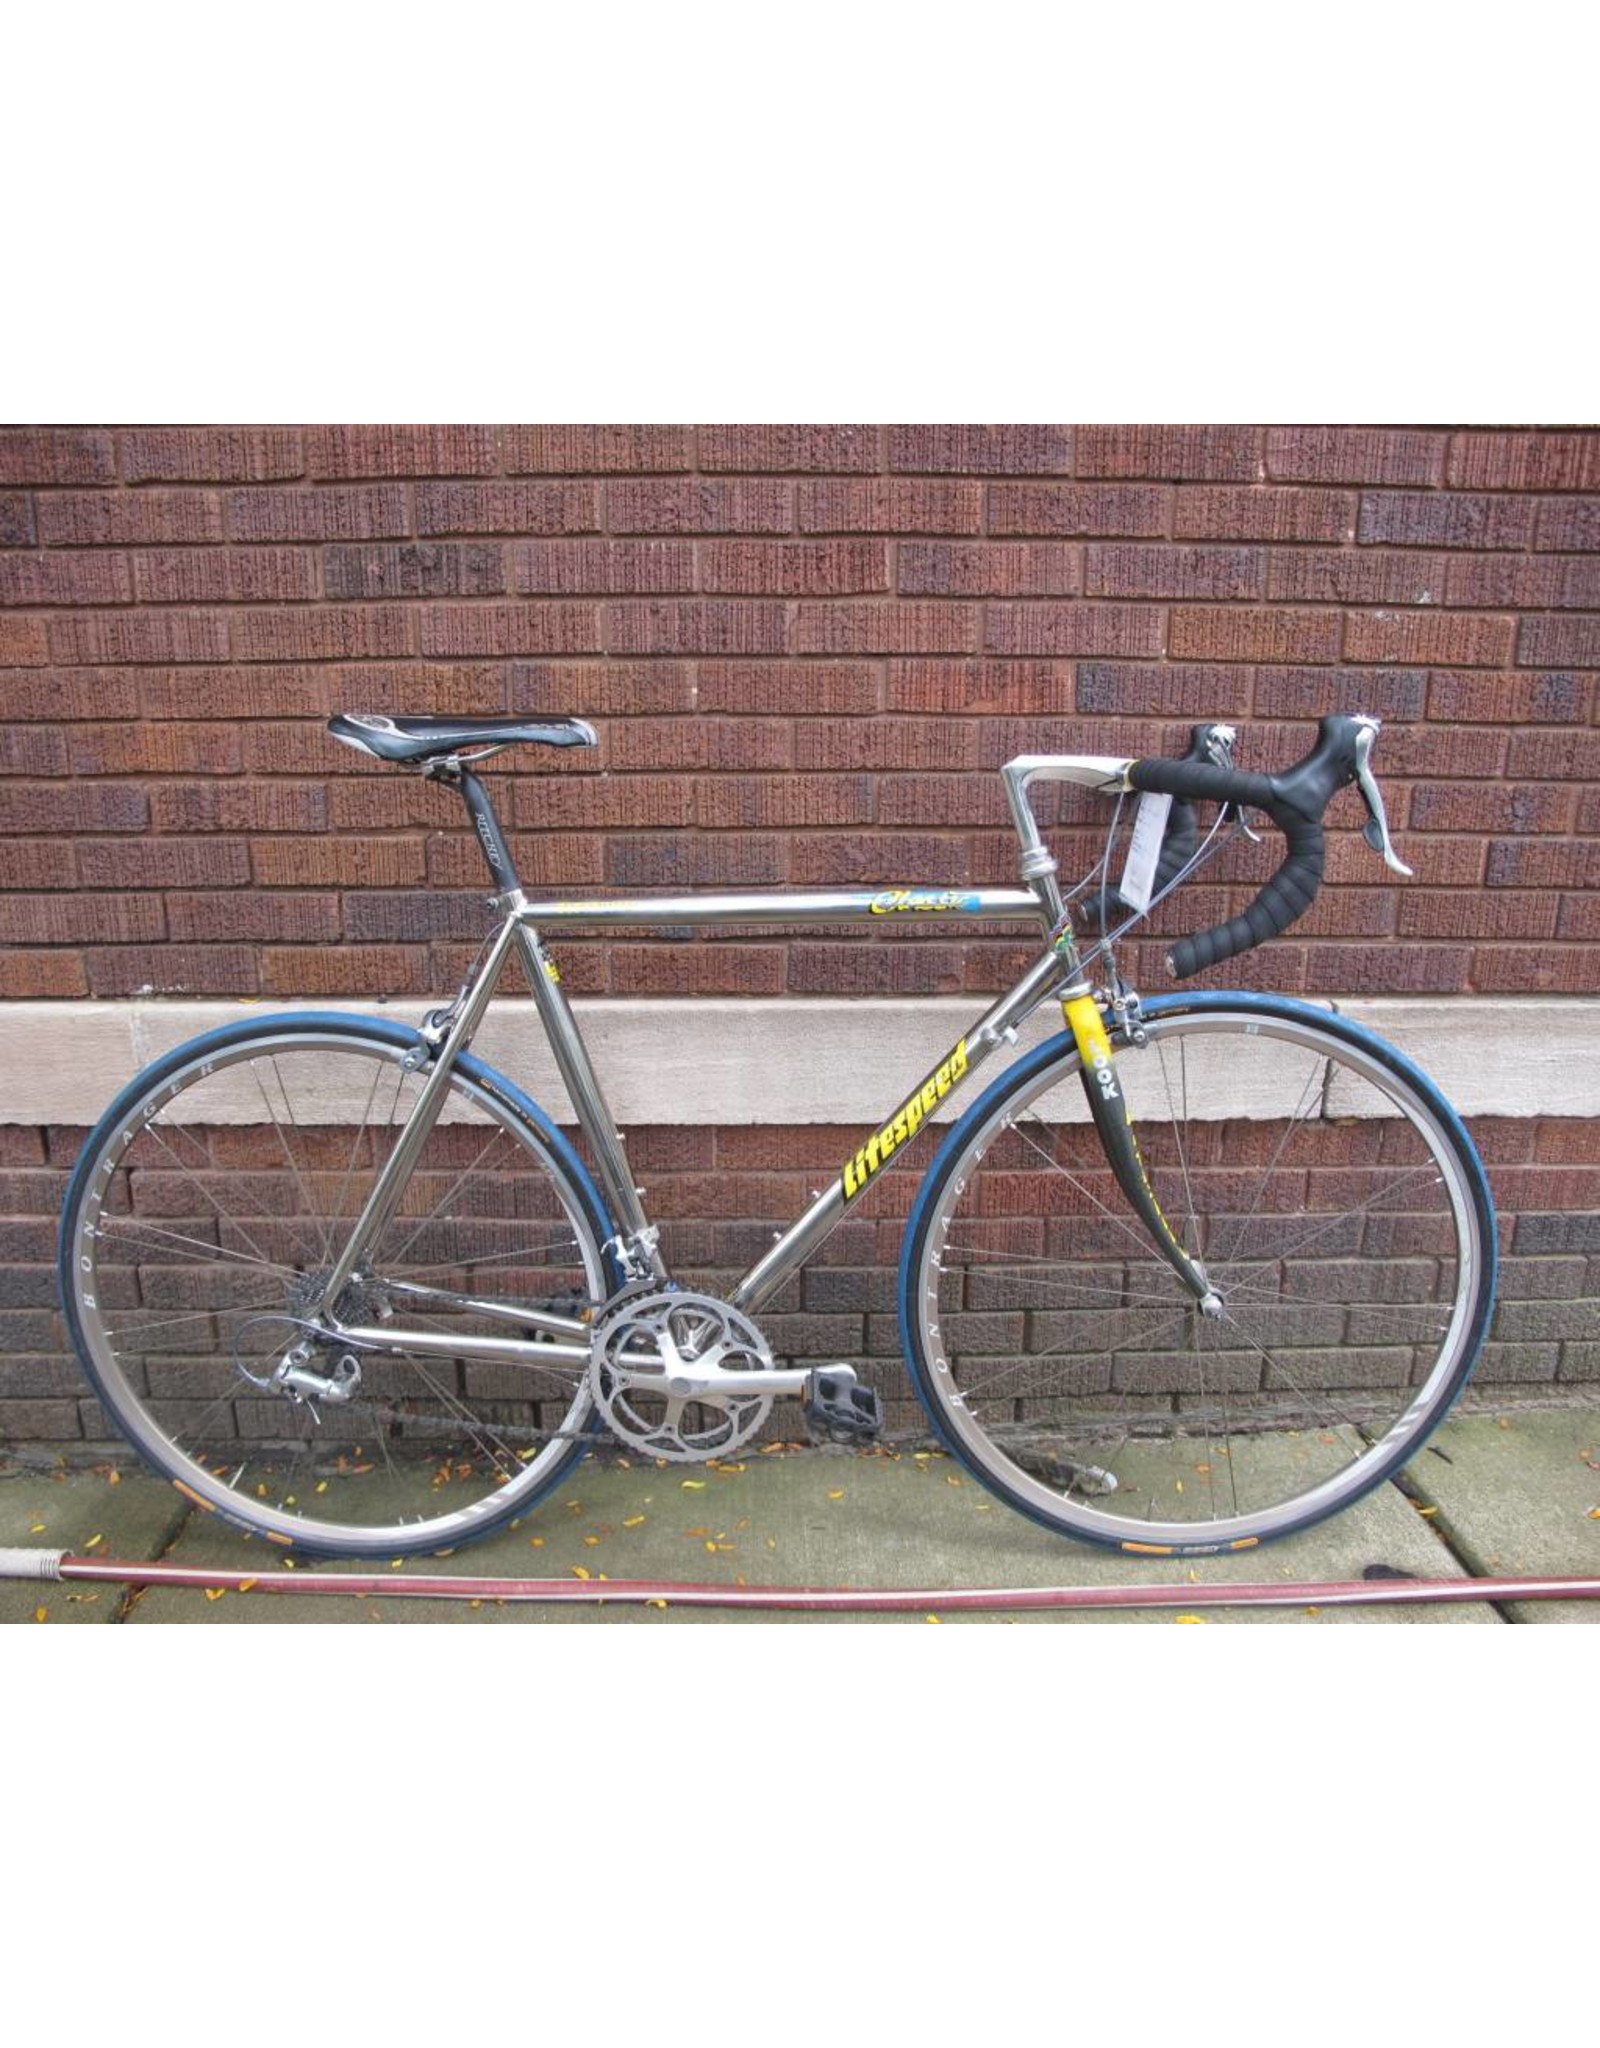 56cm bike